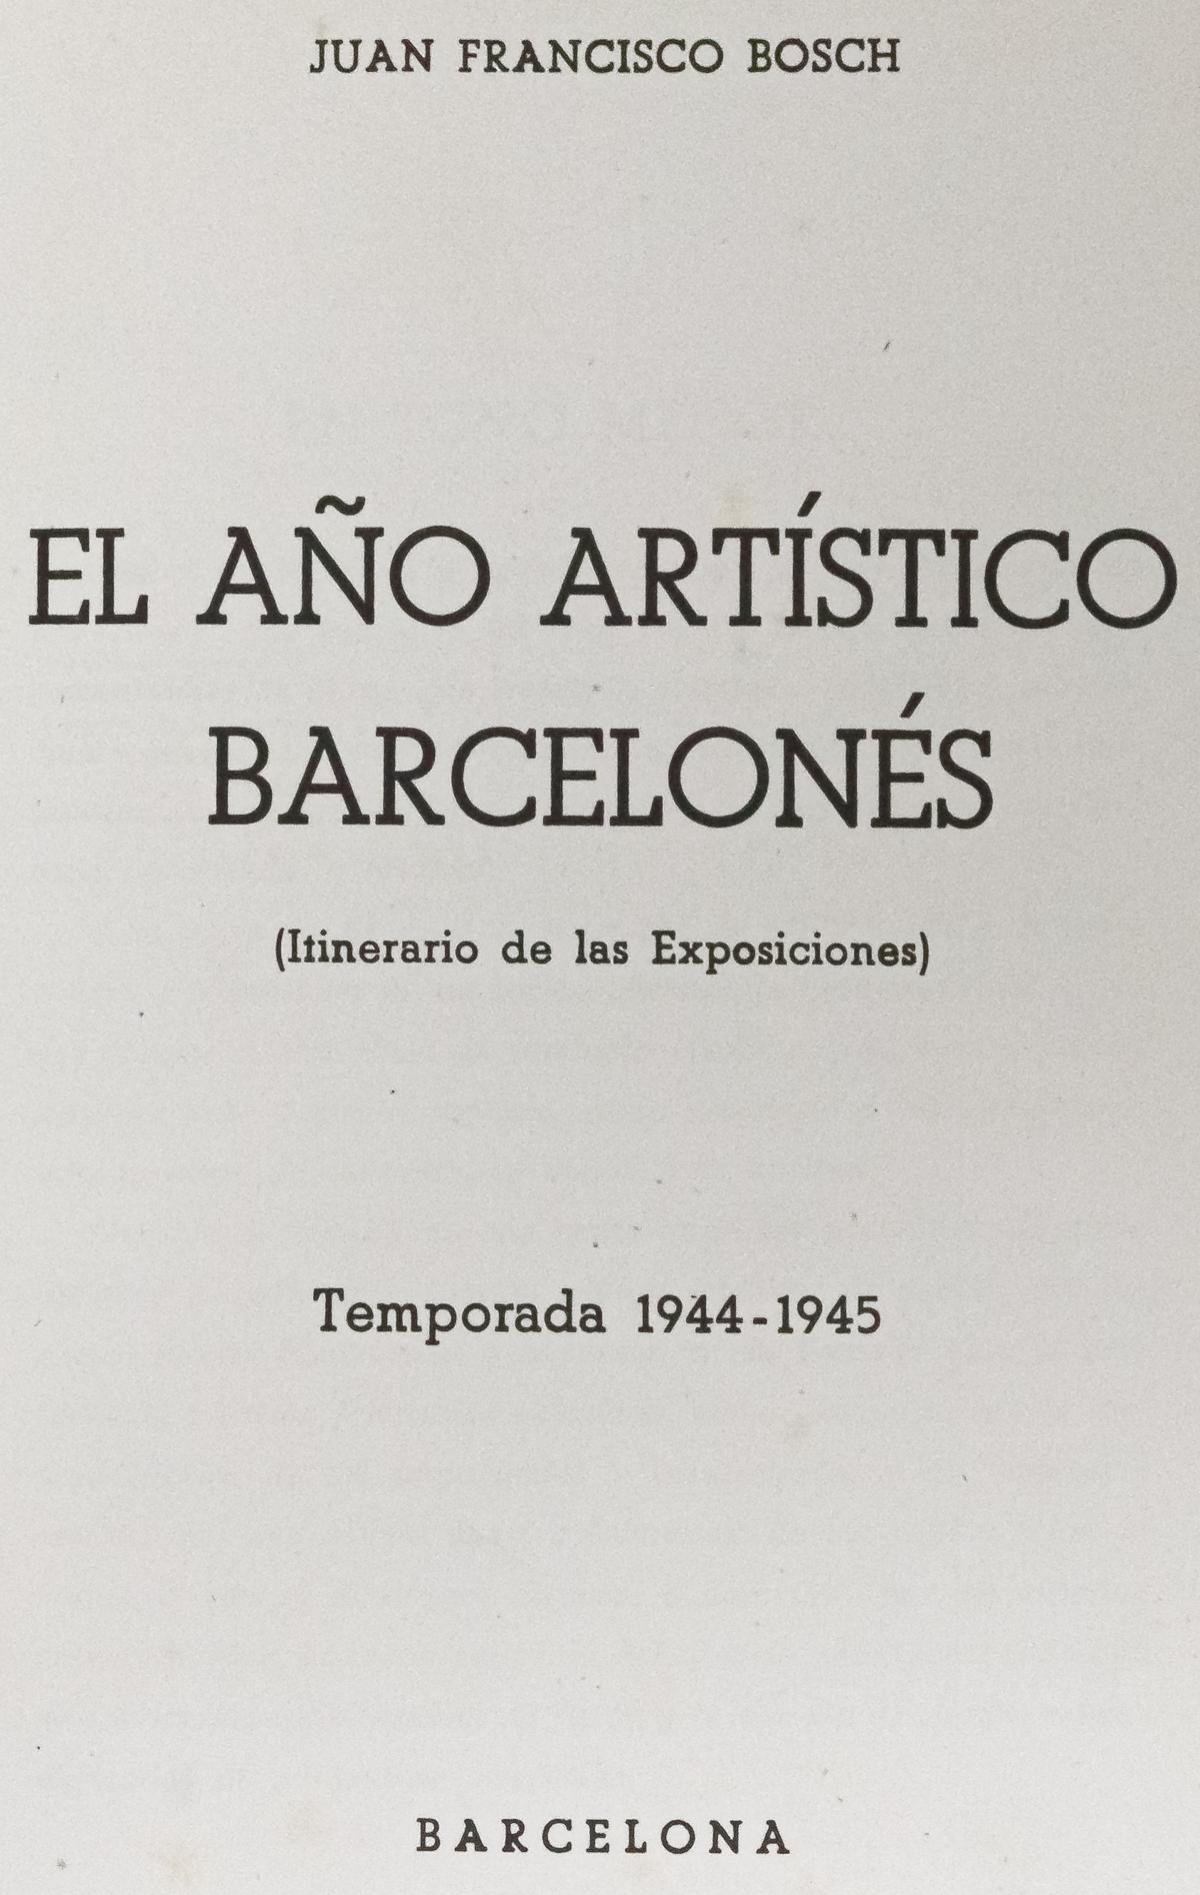 "EL AÑO ARTÍSTICO BARCELONÉS"